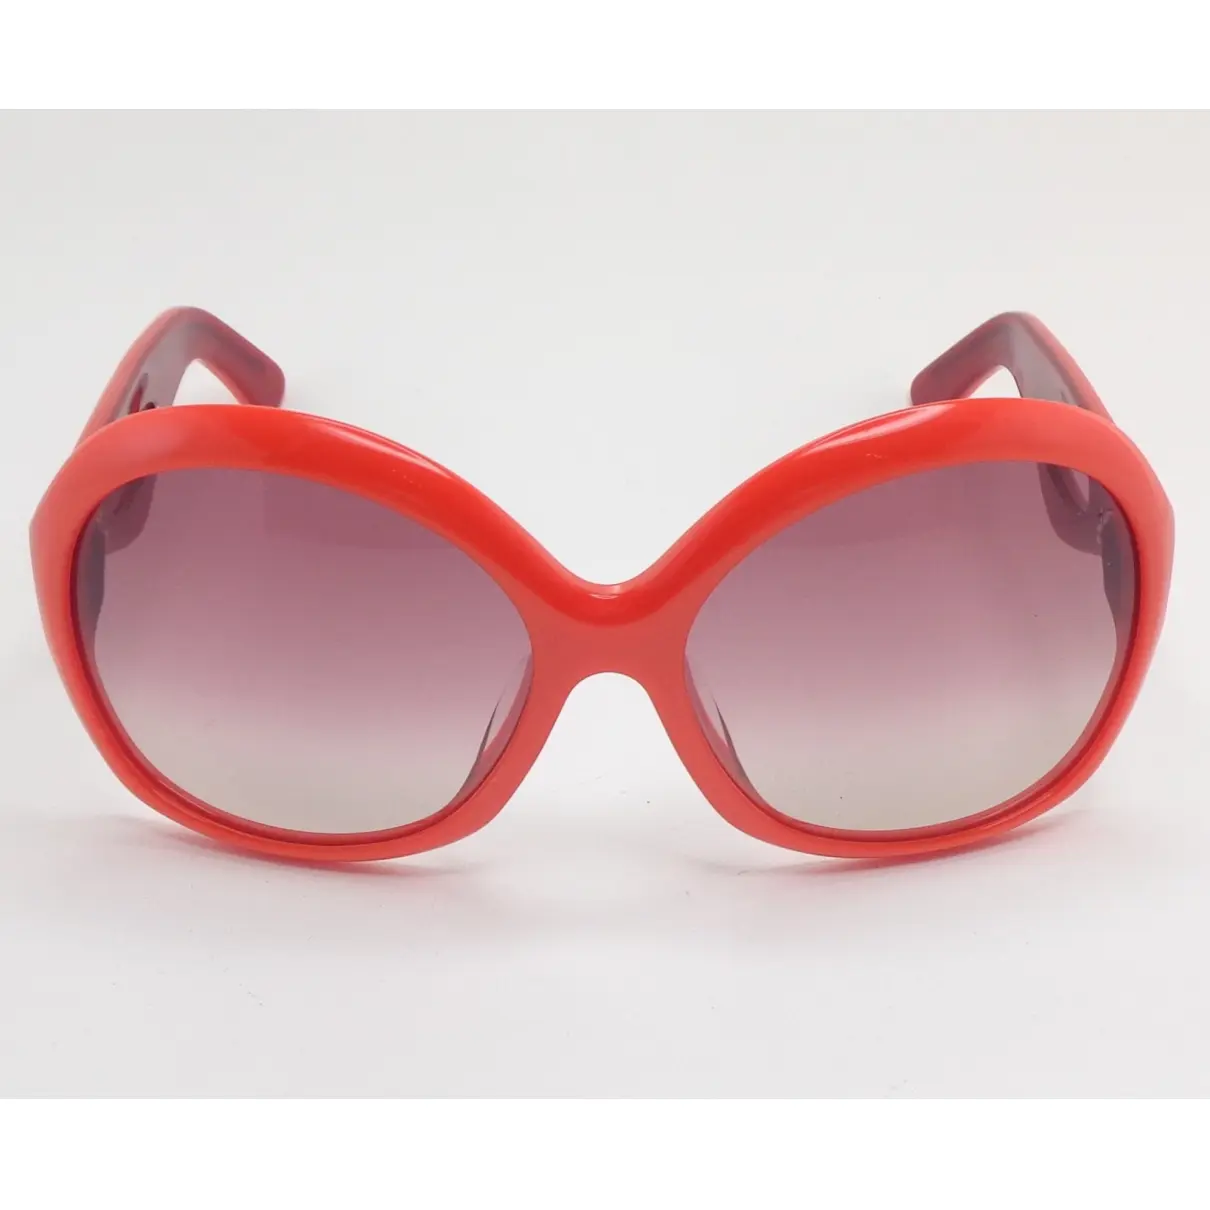 Sunglasses Emilio Pucci - Vintage